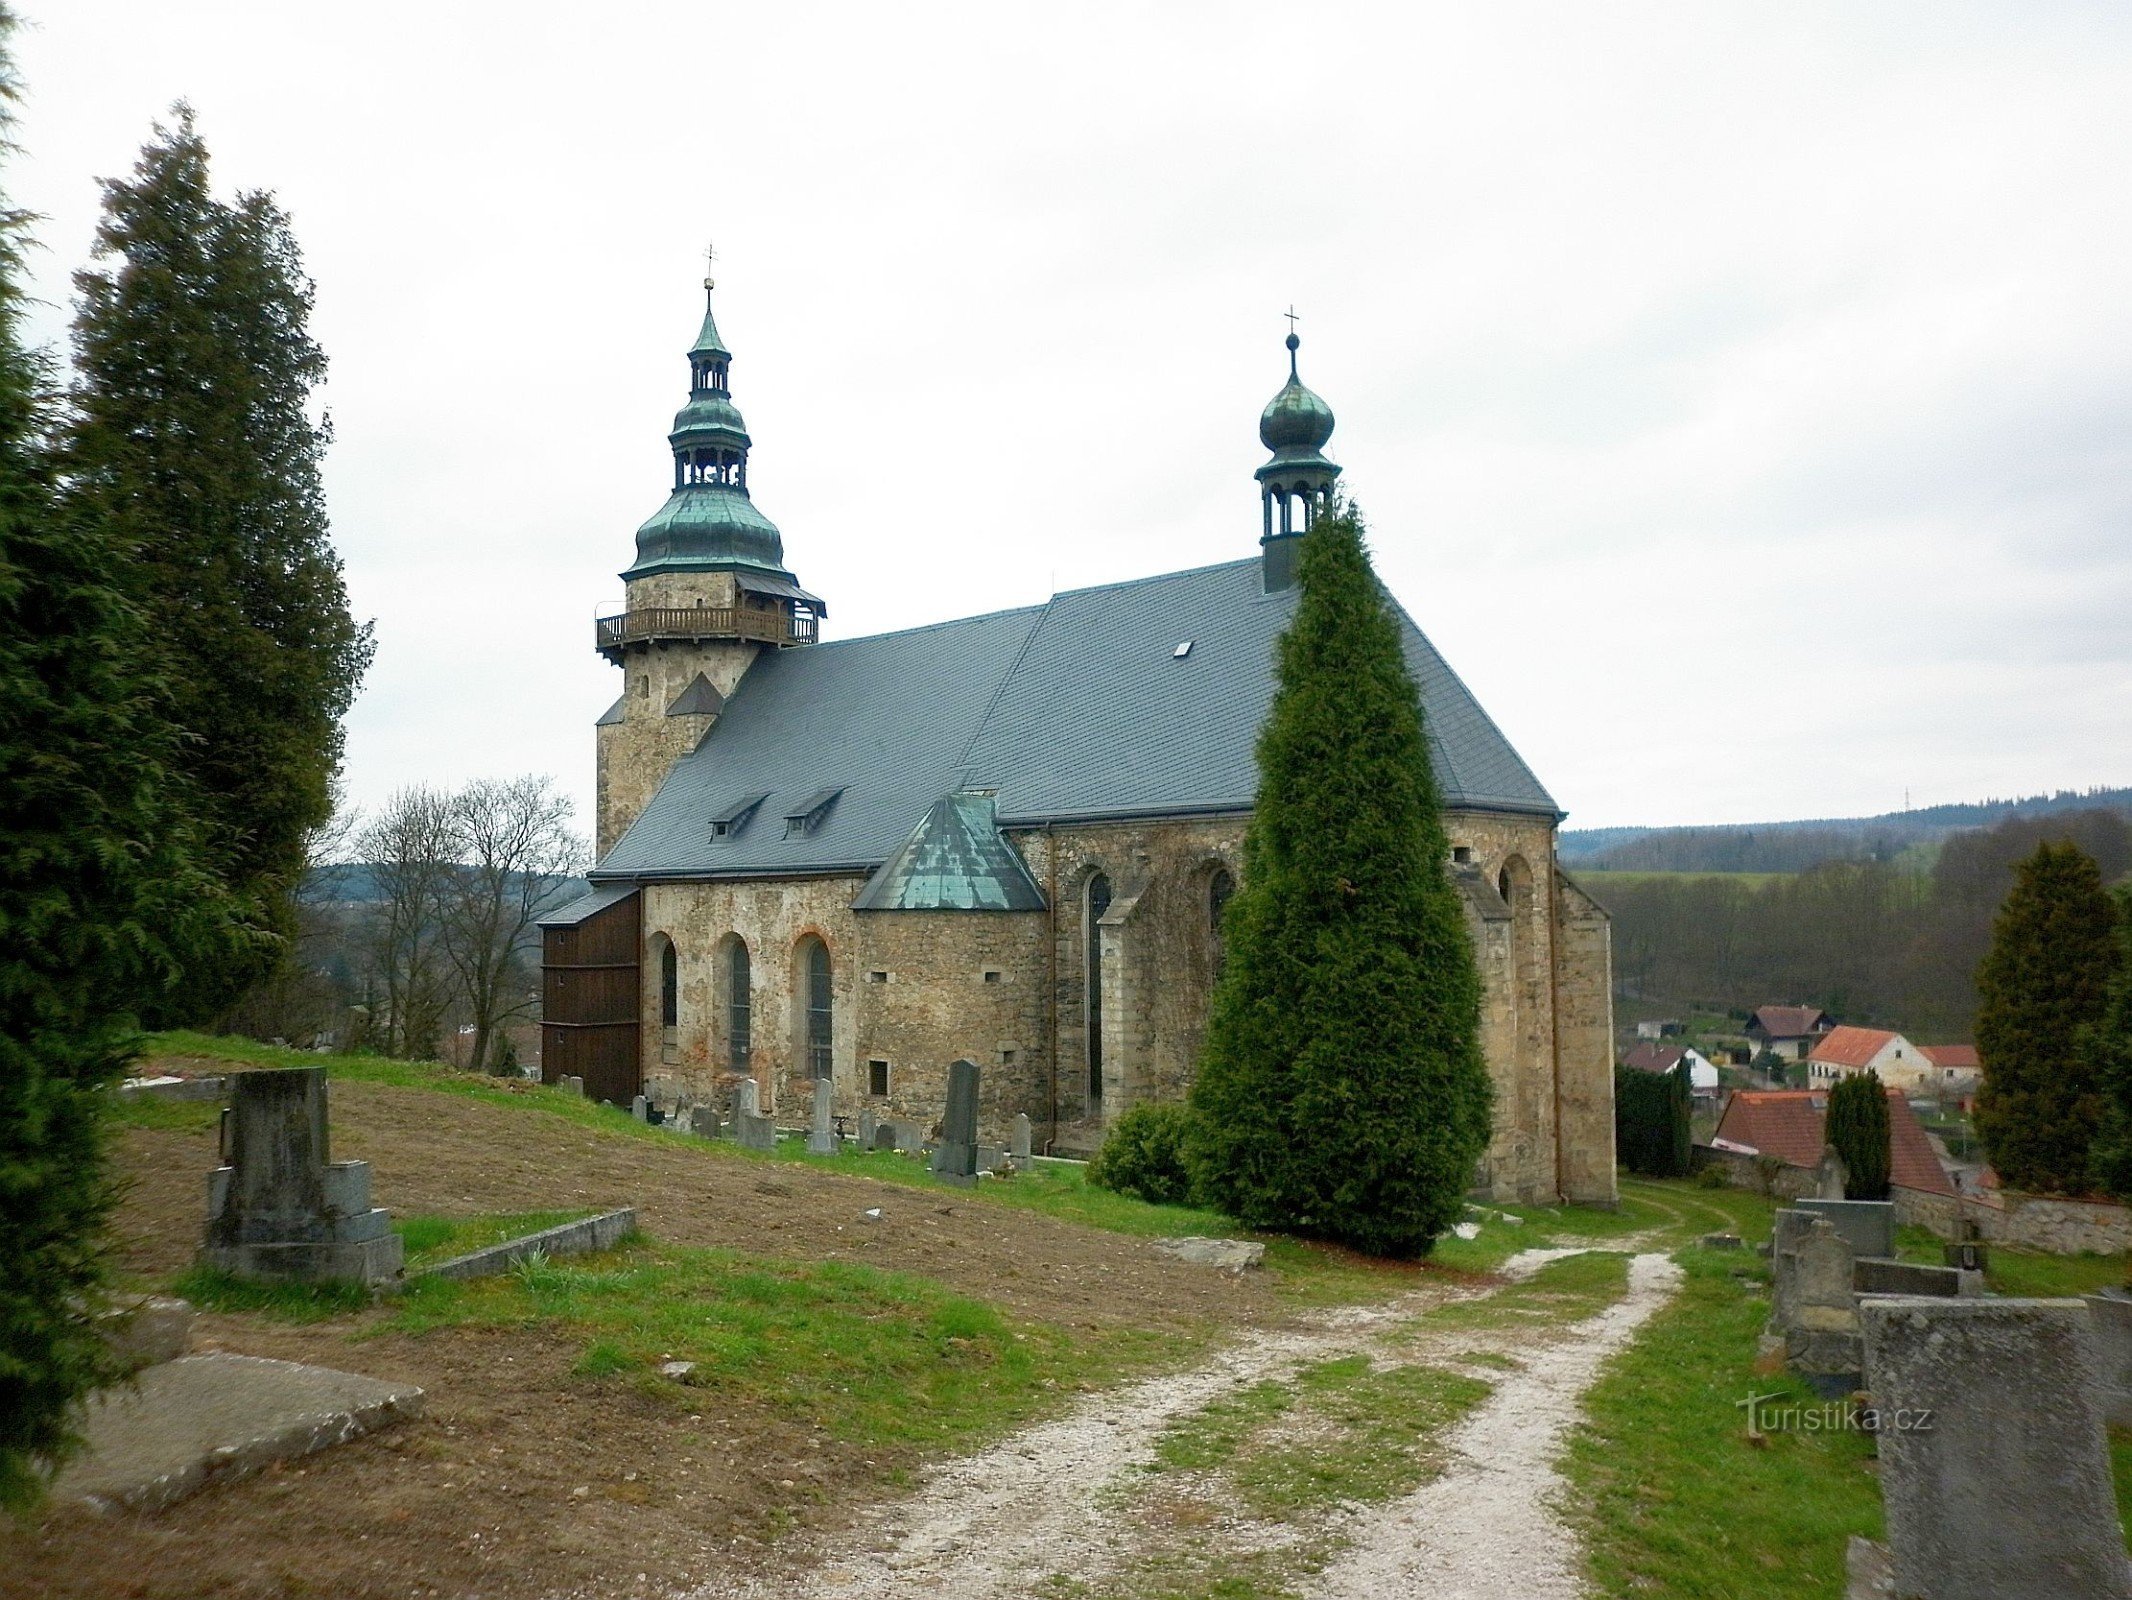 Horní Slavkov - Pyhän kirkko George